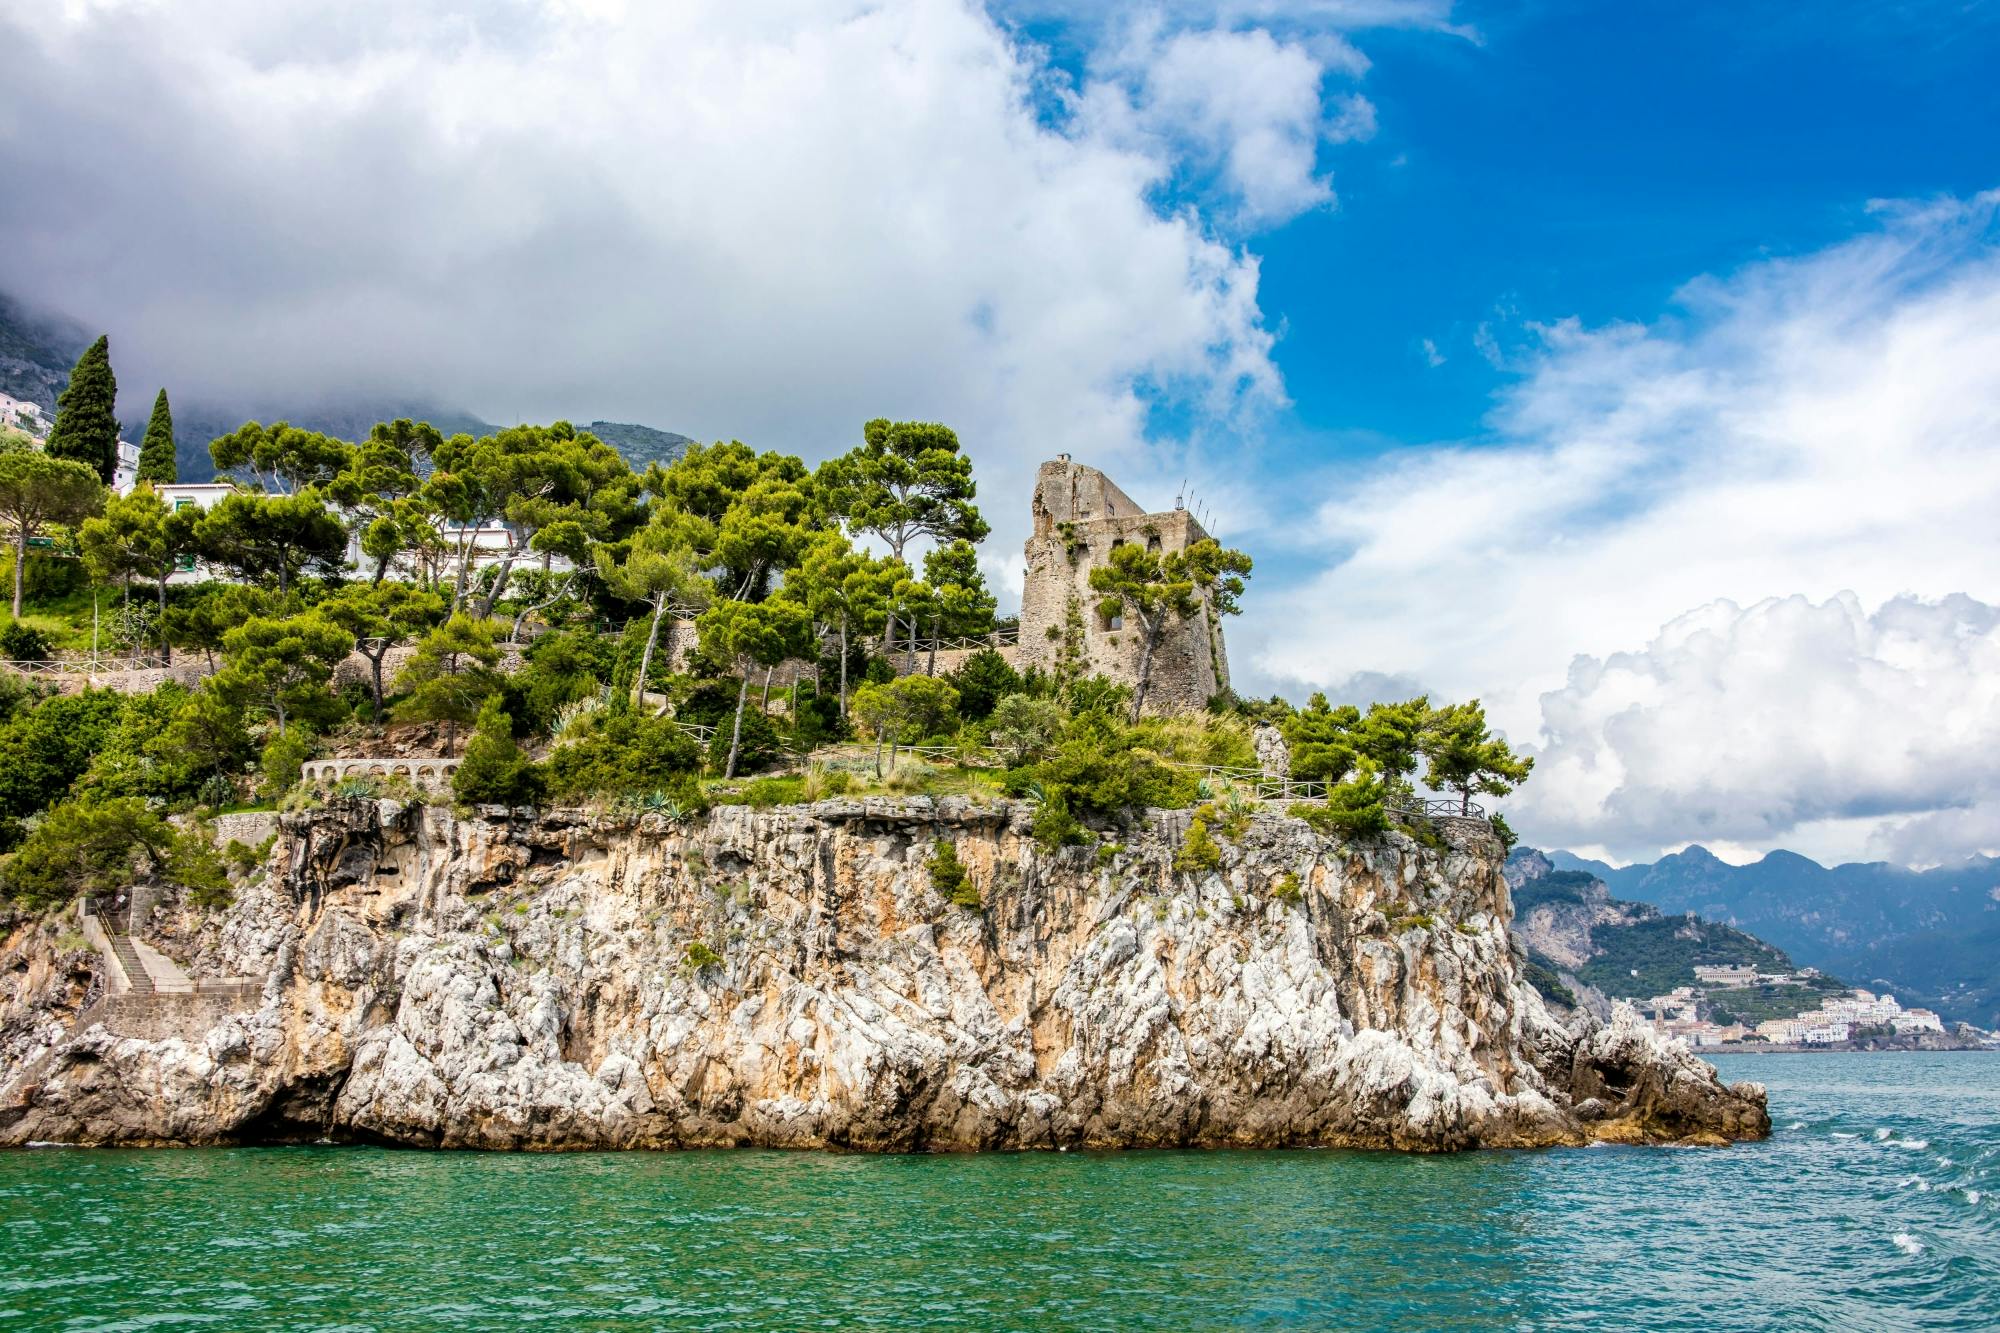 Private Bootsfahrt durch Positano und Amalfi mit Rundgang